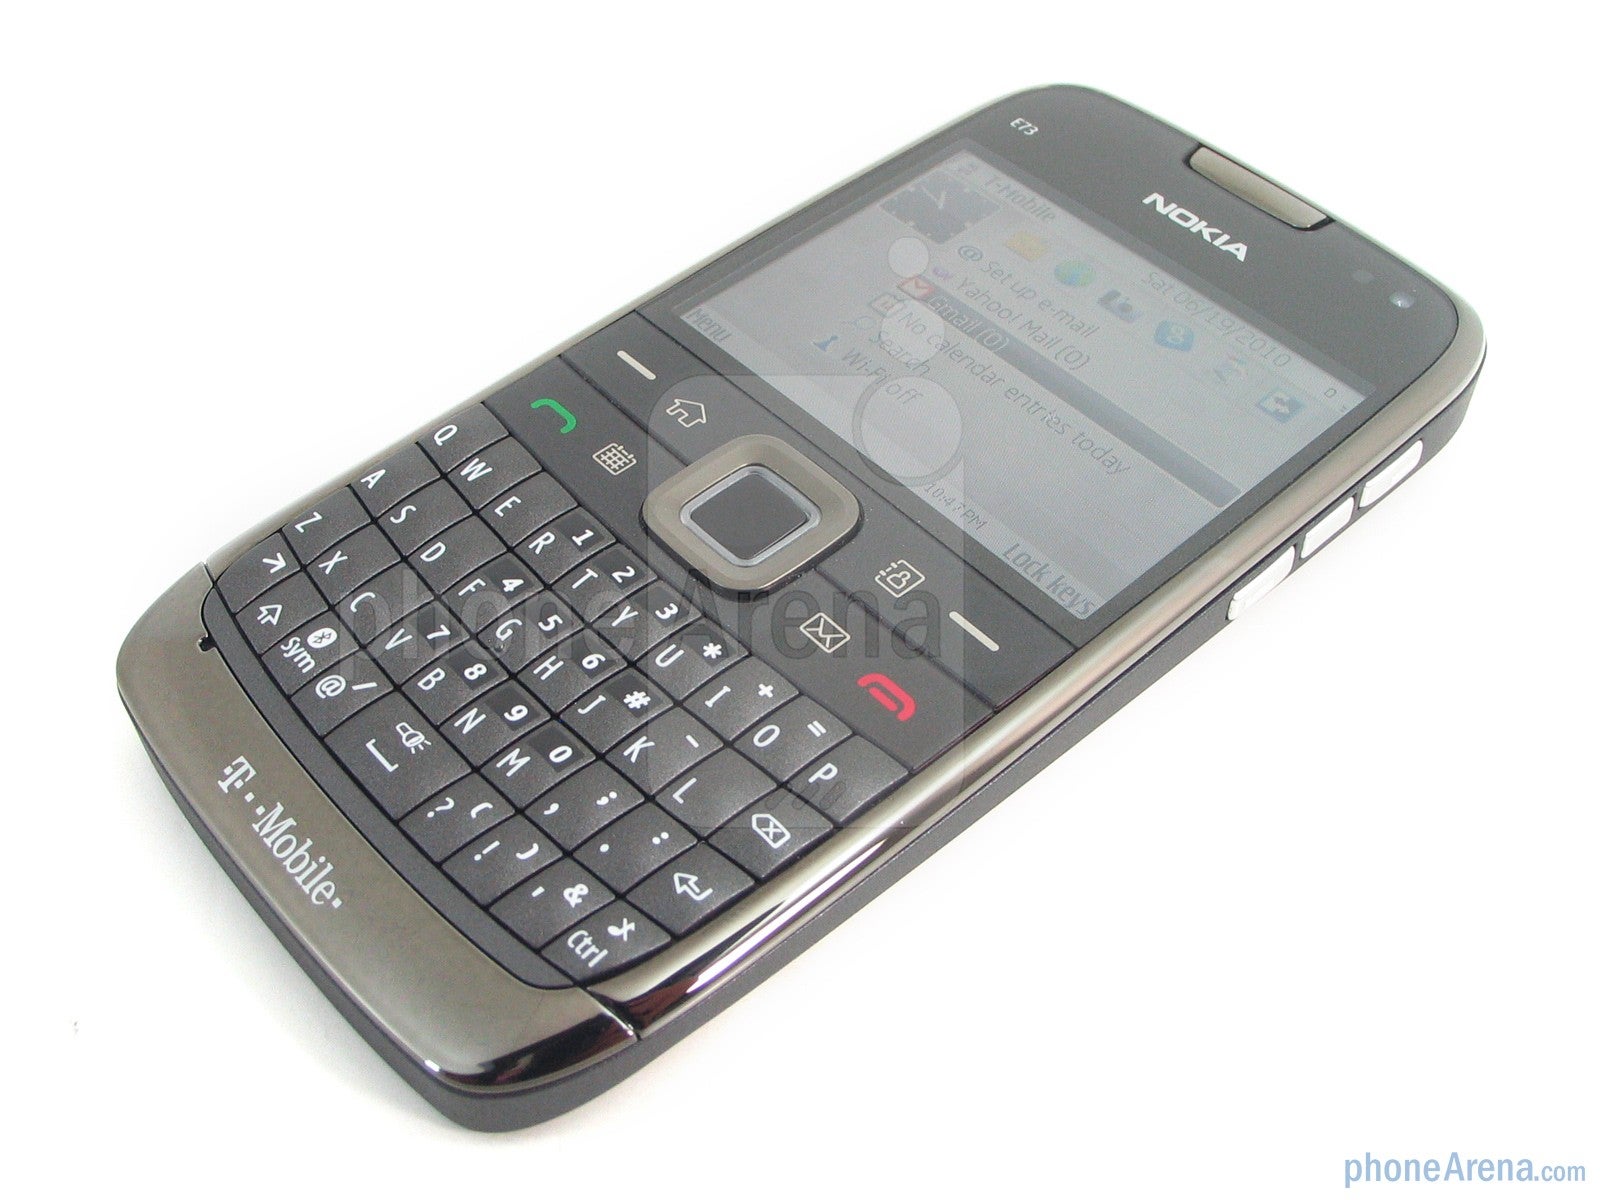 Nokia E73 Mode Review